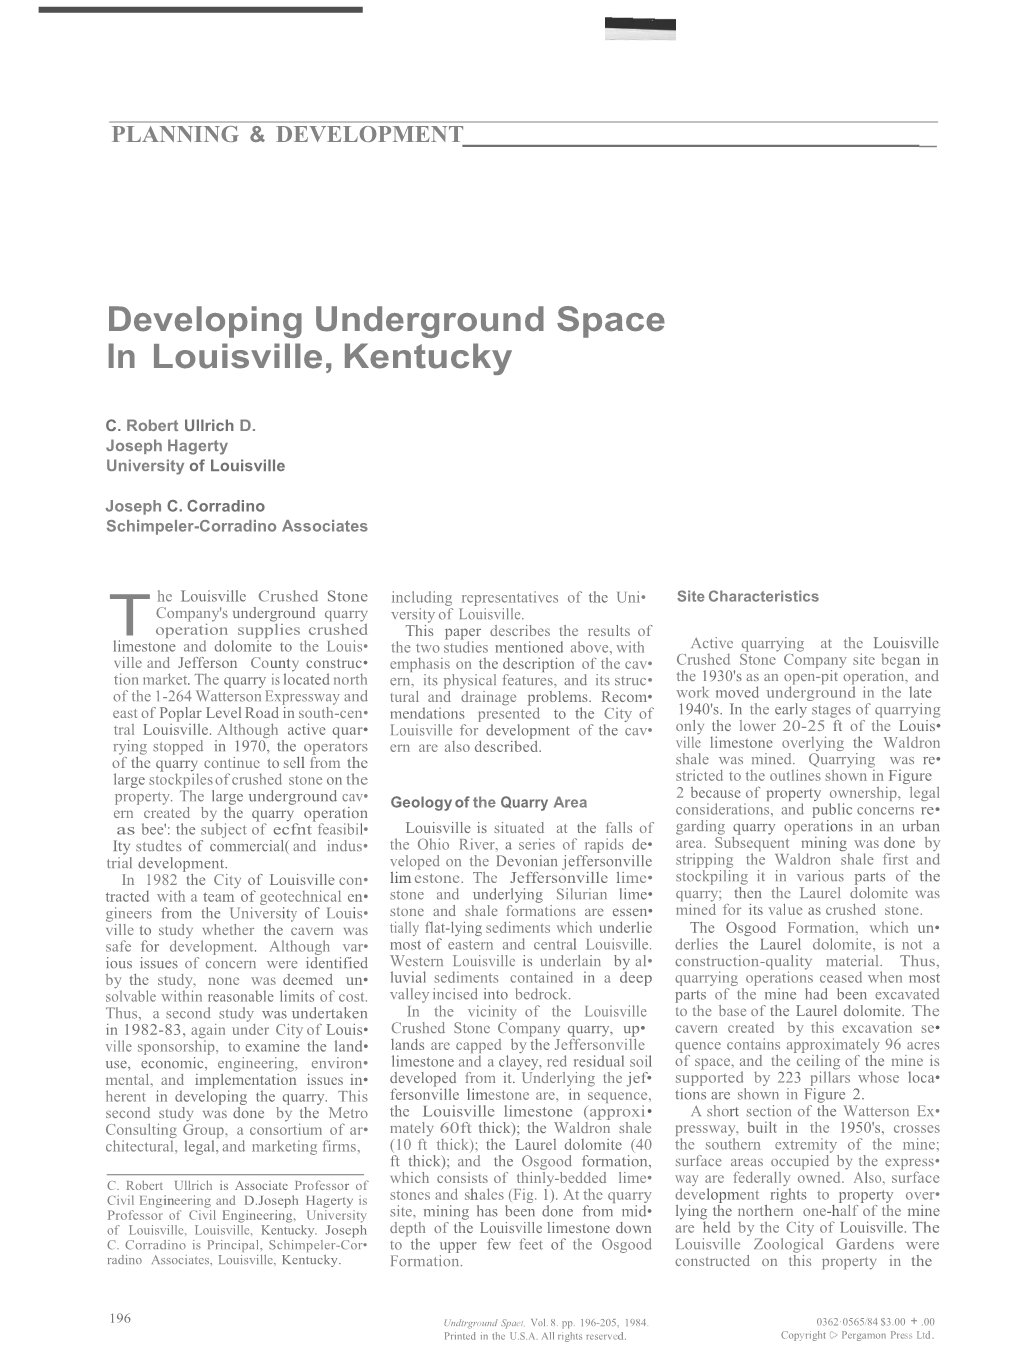 Developing Underground Space in Louisville, Kentucky